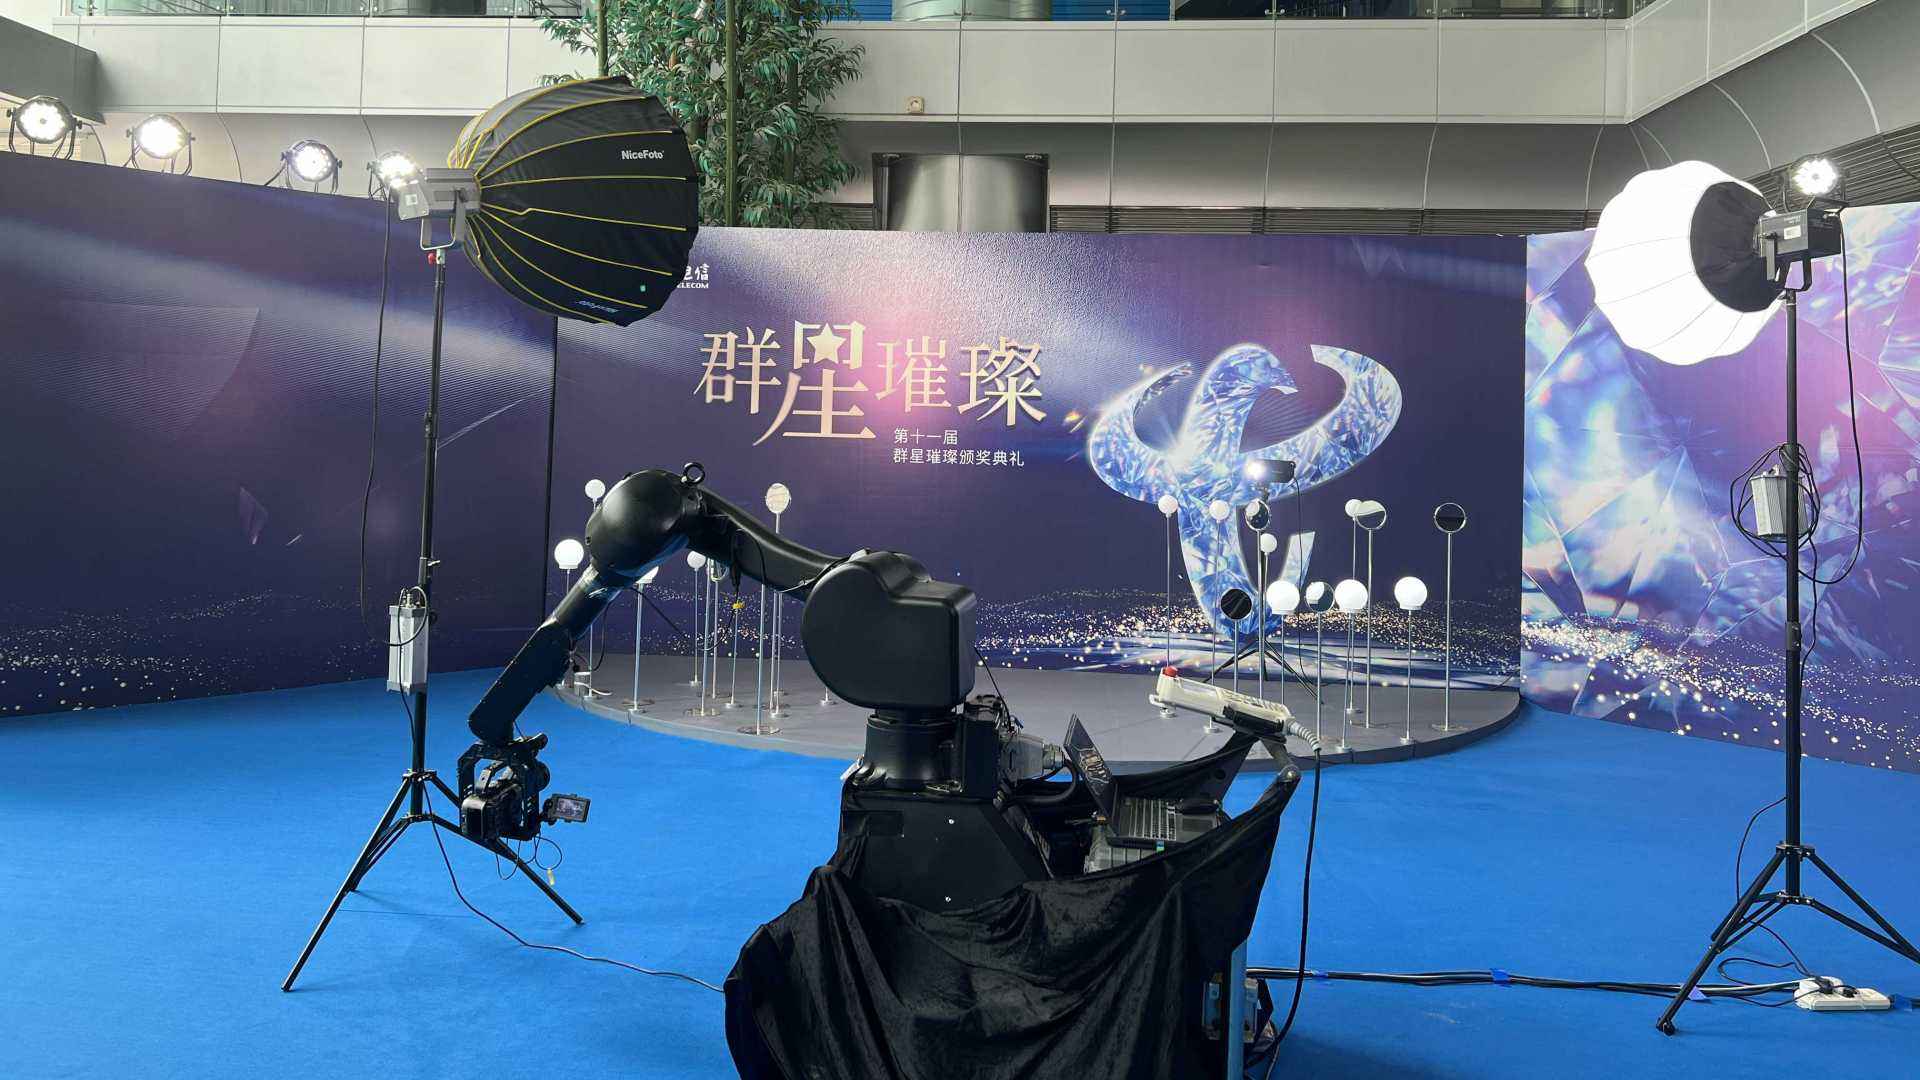 中国电信群星颁奖格莱美机械臂拍照